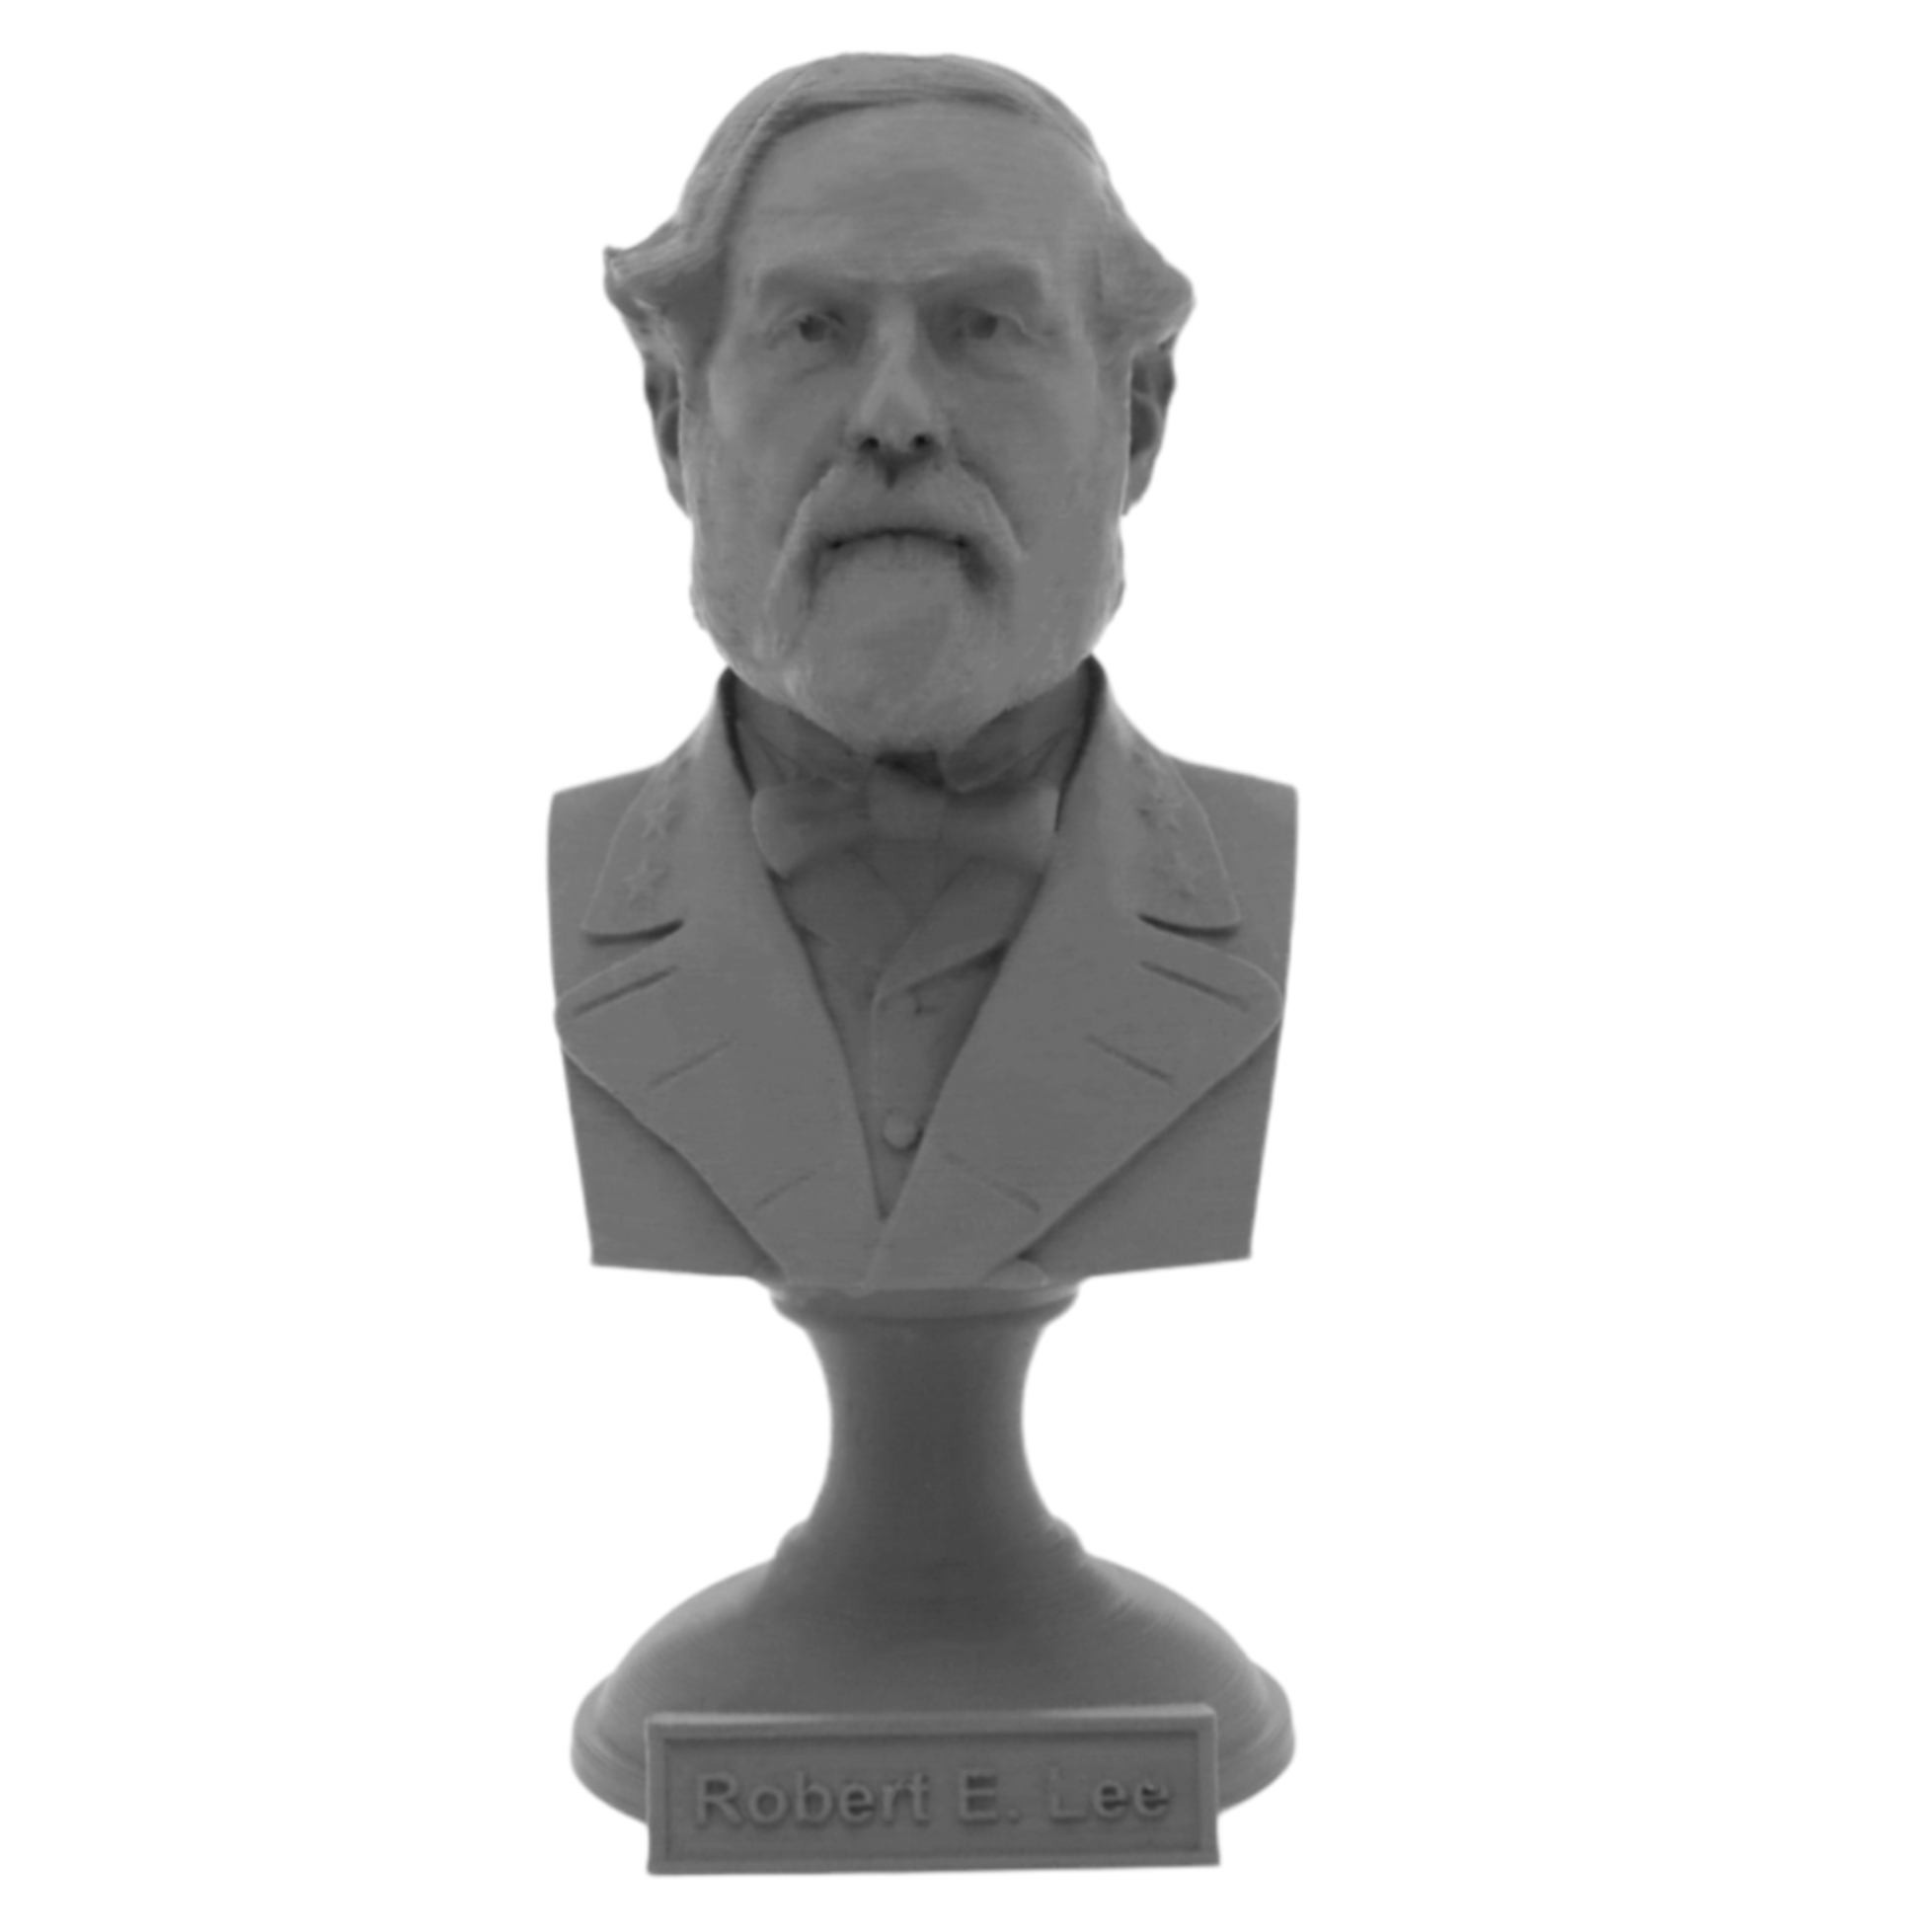 Robert E Lee American Civil War General Sculpture Bust on Pedestal